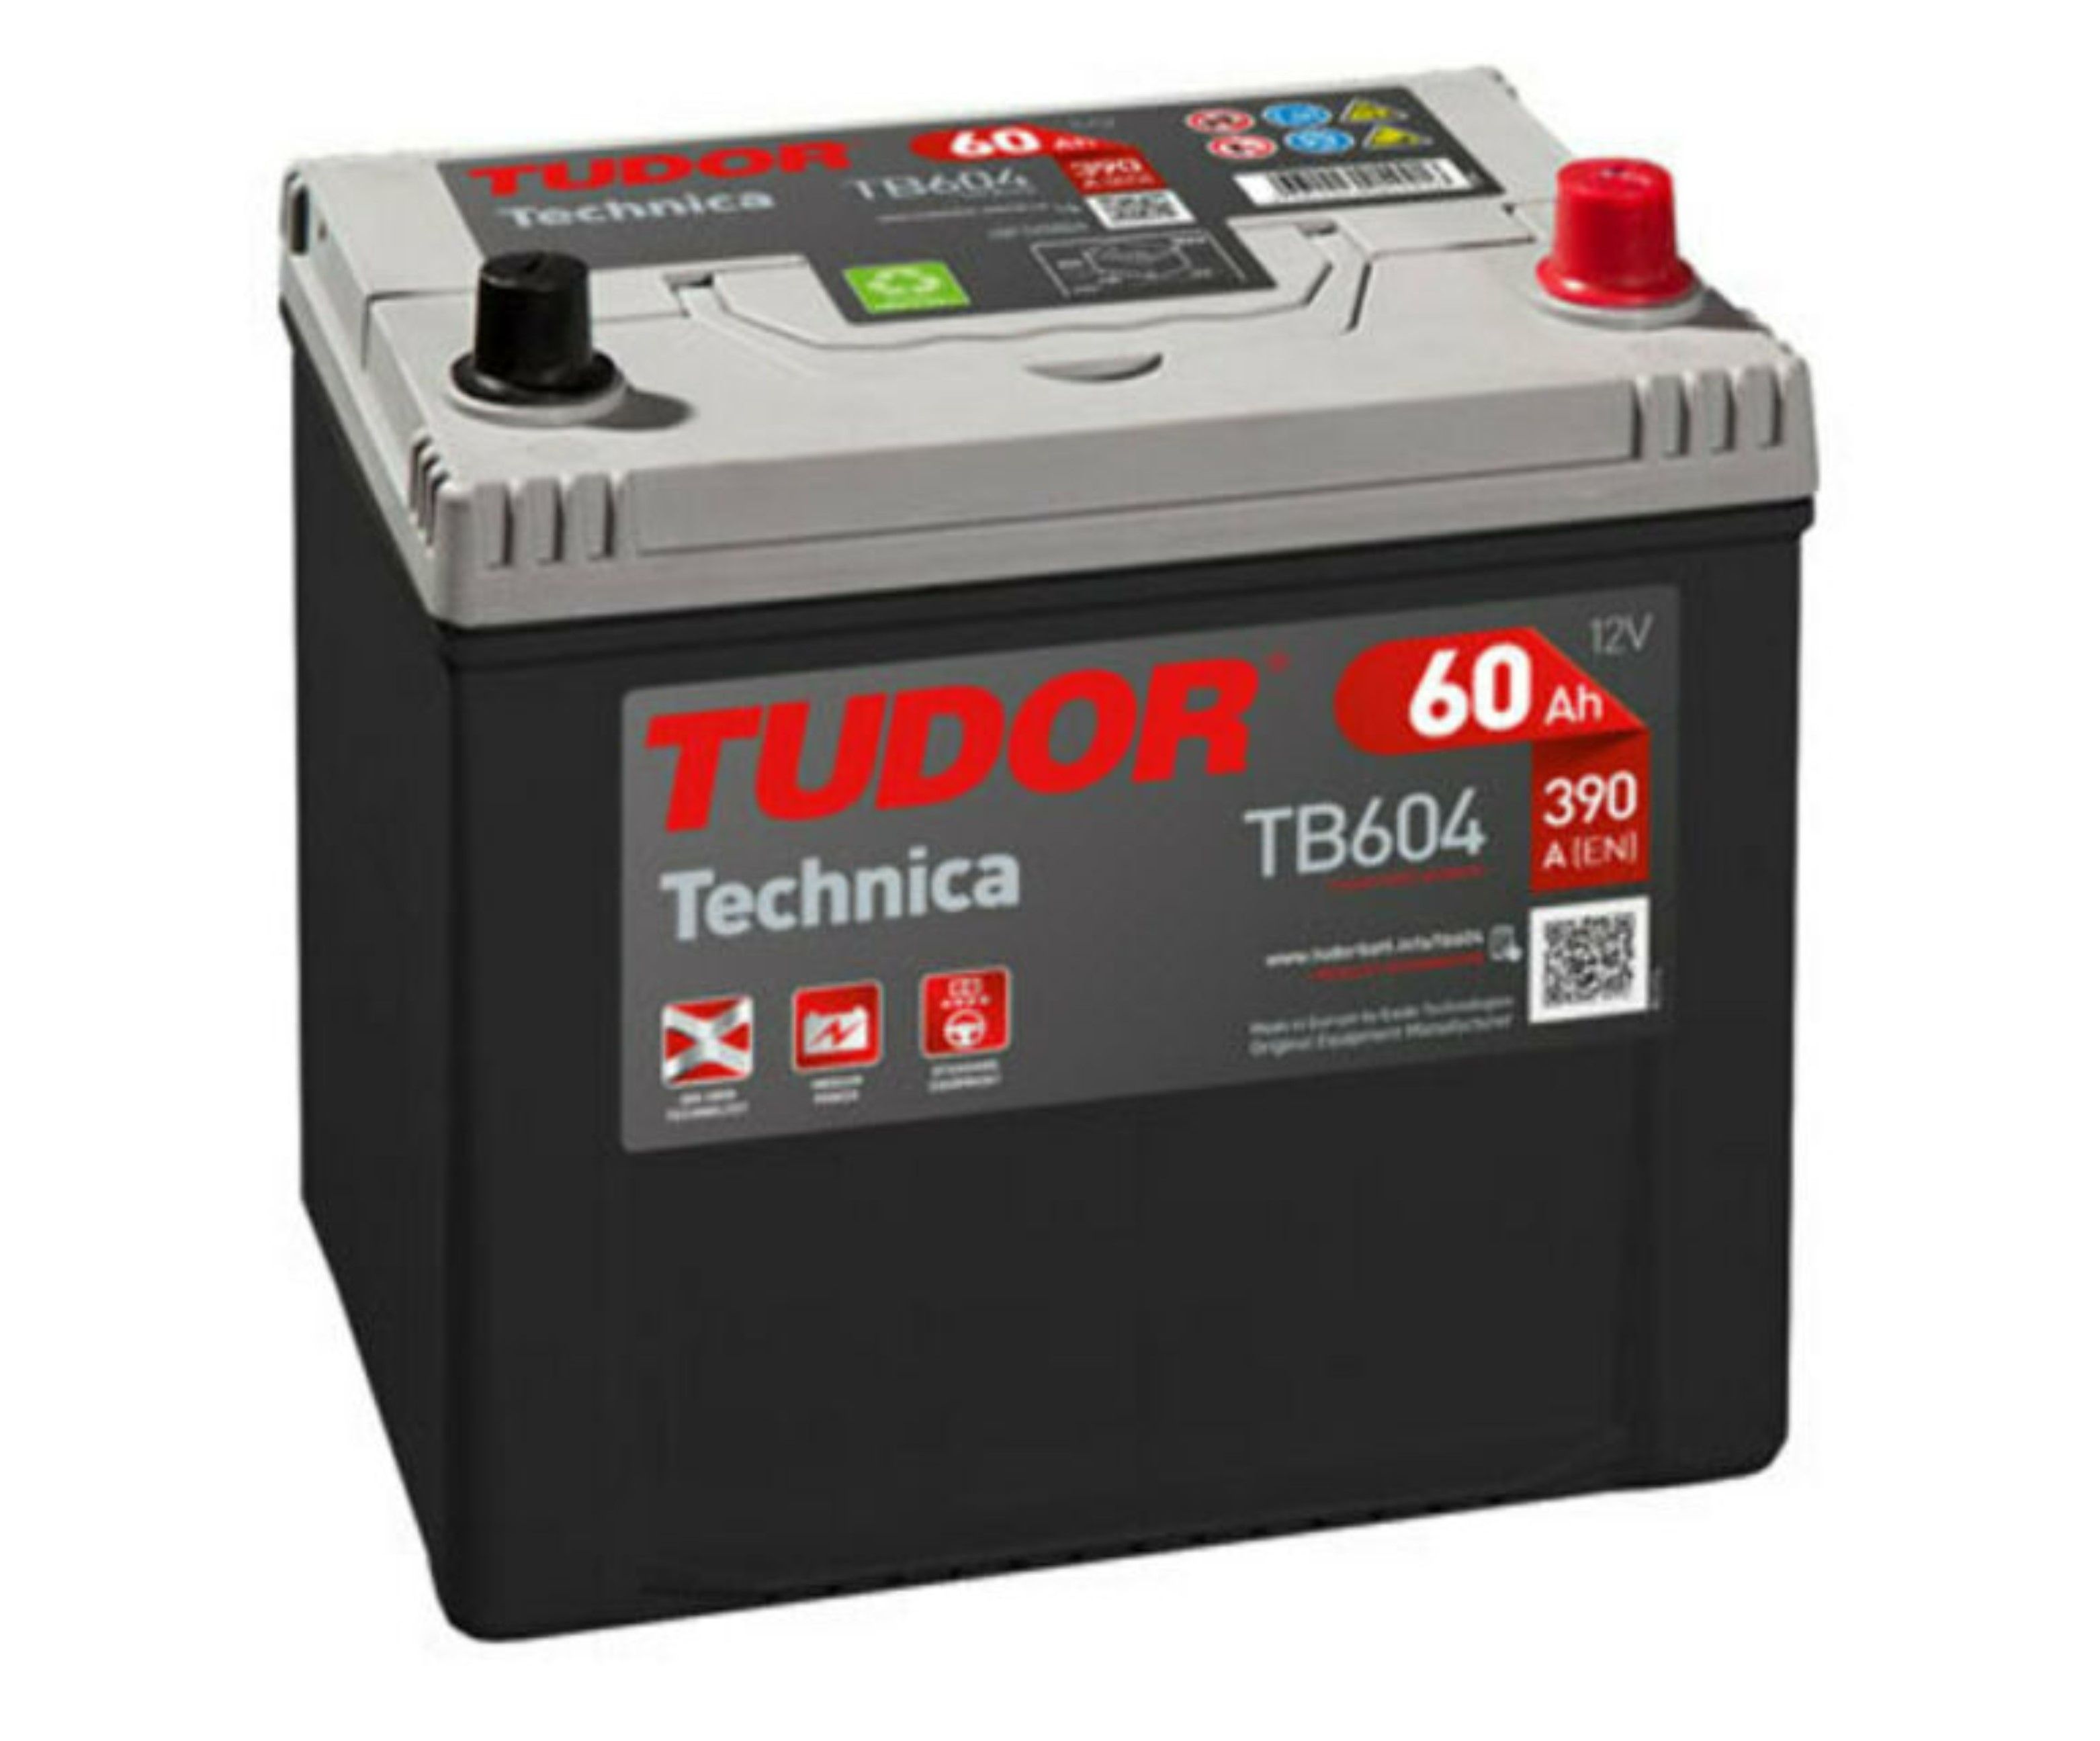 Tudor Technica, 12V 60Ah, TB604-image